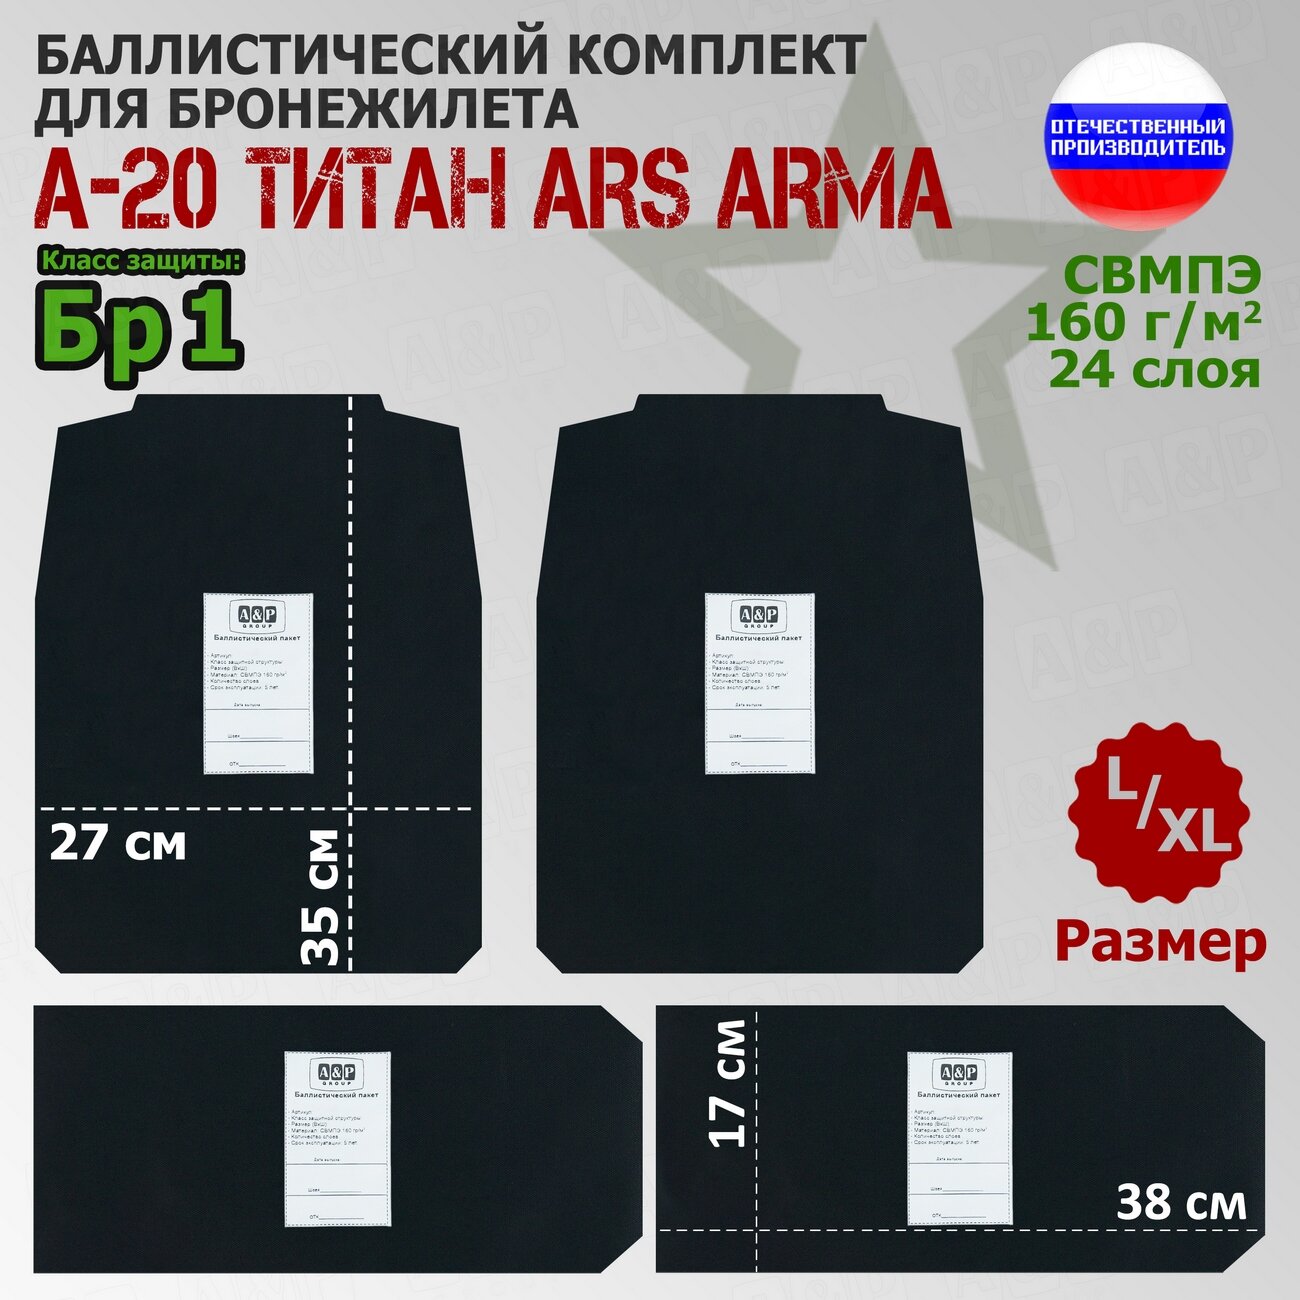 Комплект баллистических пакетов для бронежилета А-20 Титан Ars Arma. Размер L/XL. Класс защитной структуры Бр 1.